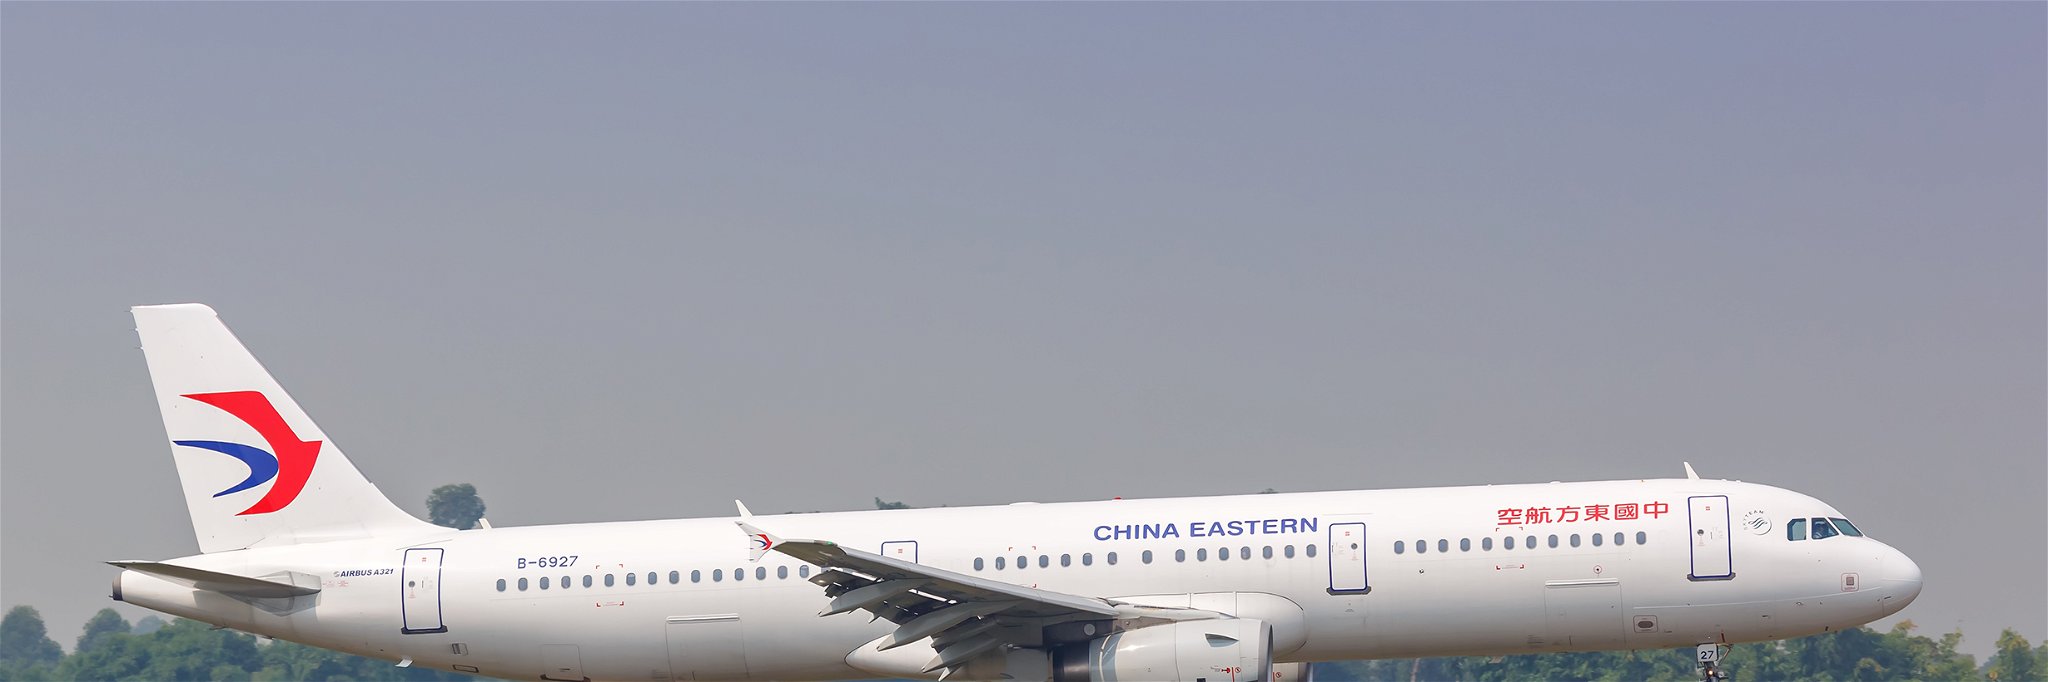 Ein Flugzeug von China Eastern Airlines.